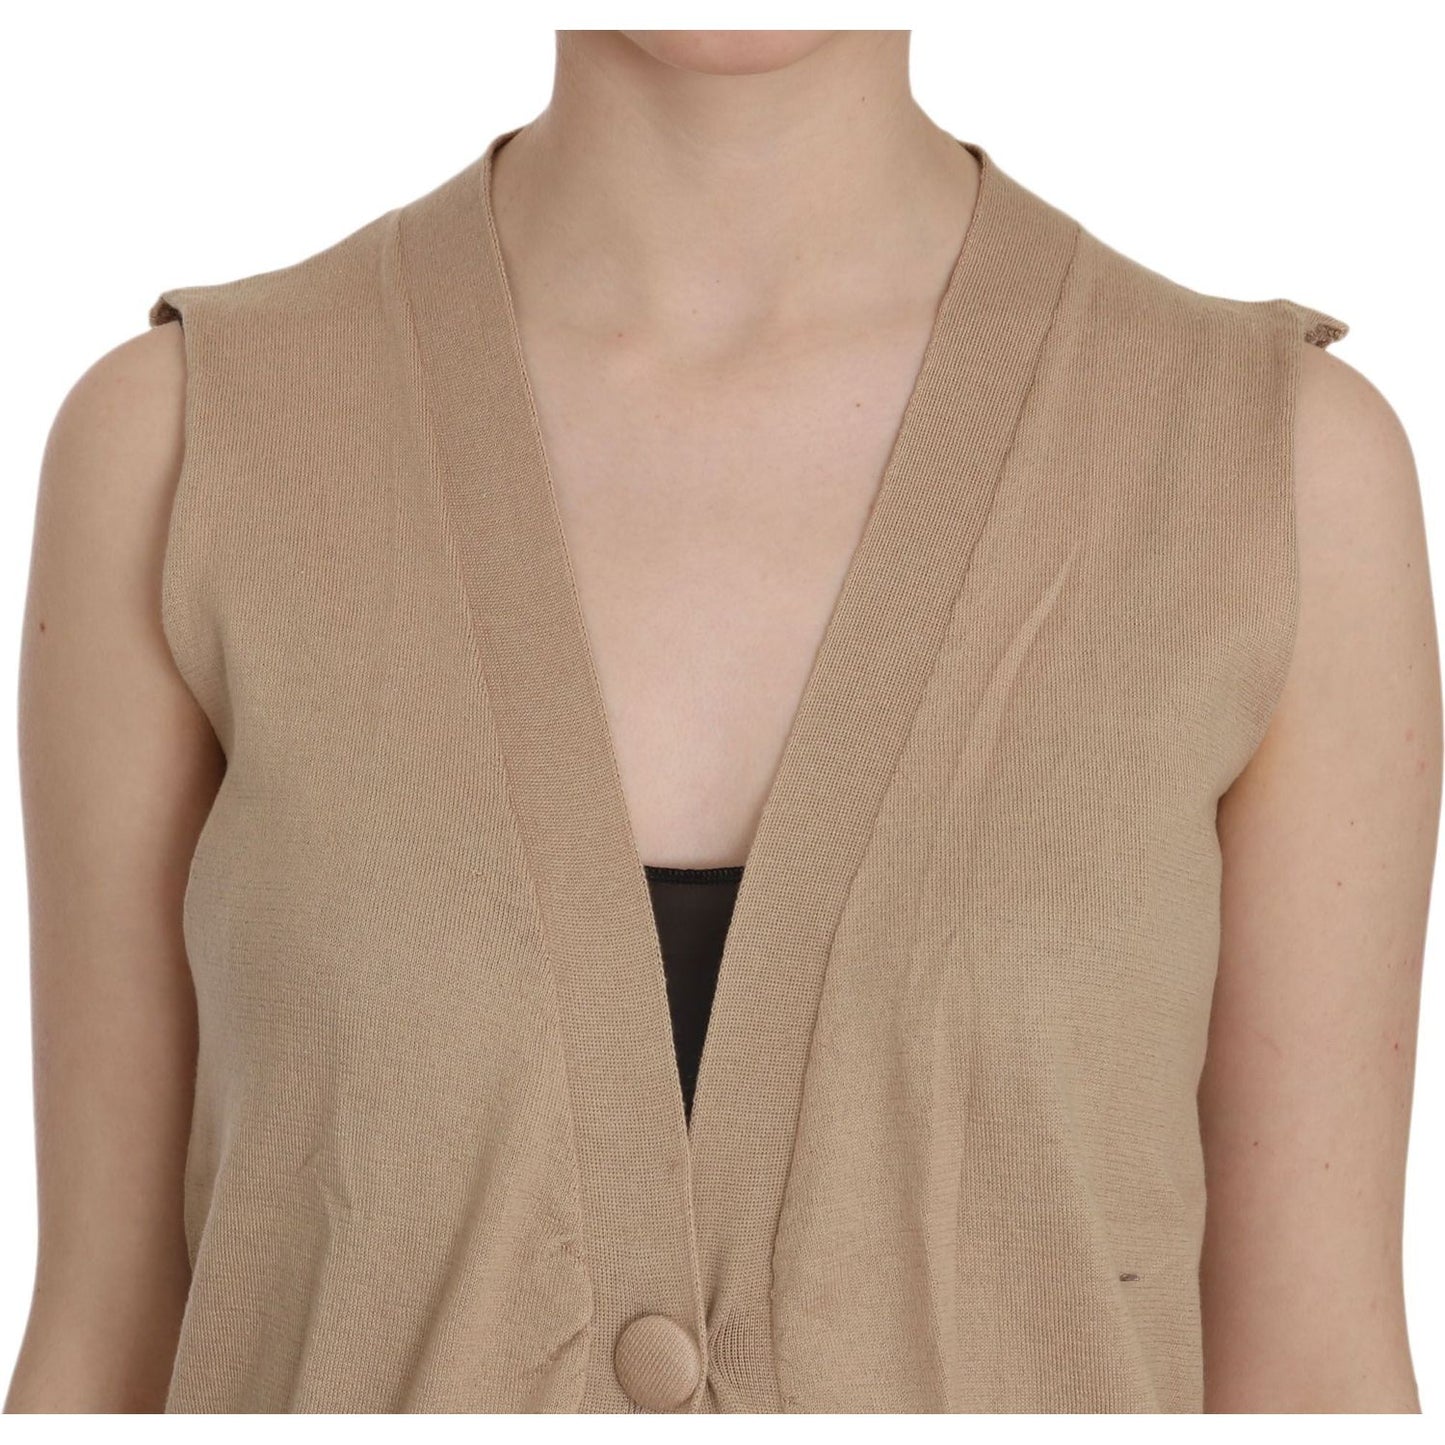 PINK MEMORIES | Brown 100% Cotton Sleeveless Cardigan Top Vest | McRichard Designer Brands